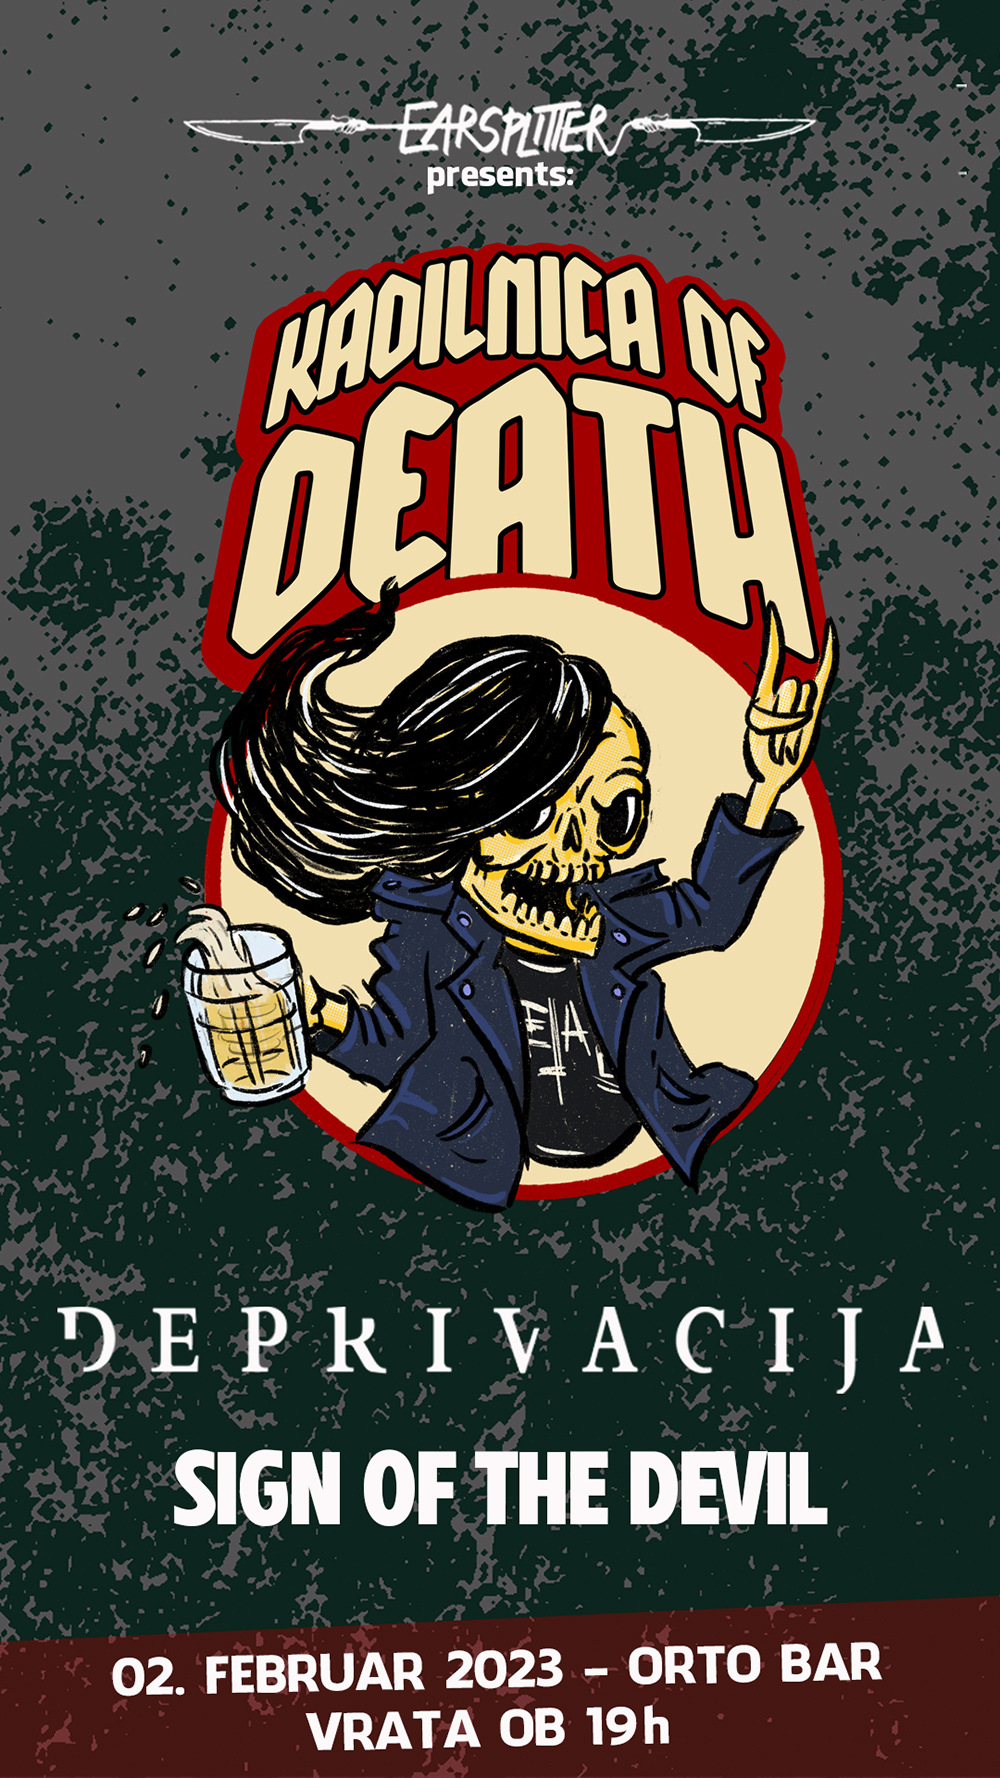 02.02.2023 - Kadilnica of Death Extra: Deprivacija (Lit), Sign of the Devil (Slo) @ Orto Bar, Ljubljana